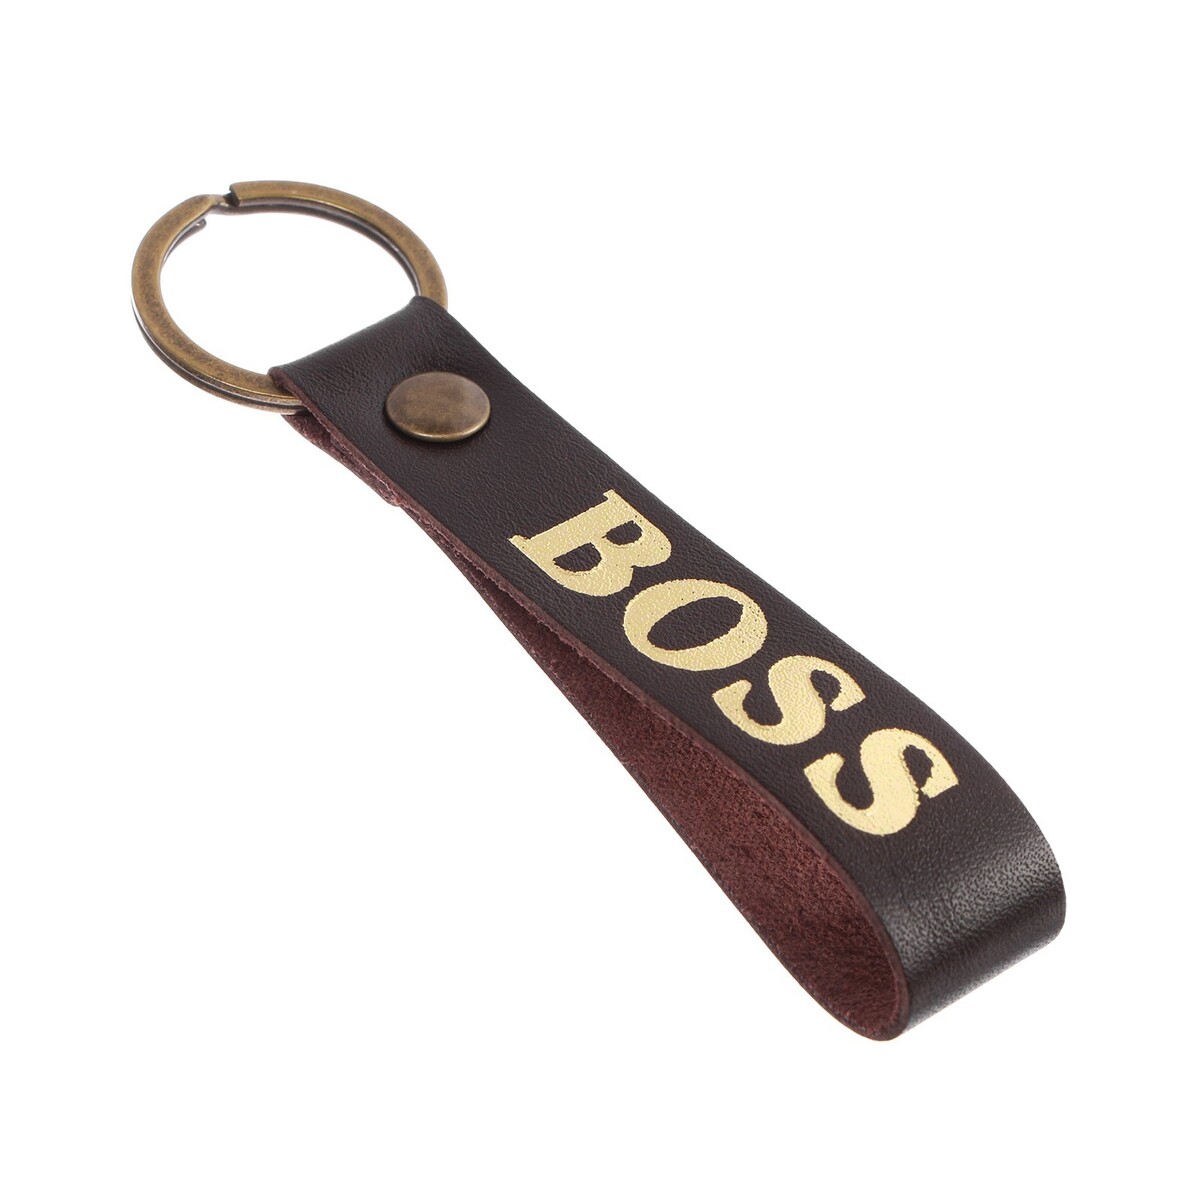 Брелок для автомобильного ключа, ремешок, натуральная кожа, коричневый, босс No brand 04944196 - фото 4